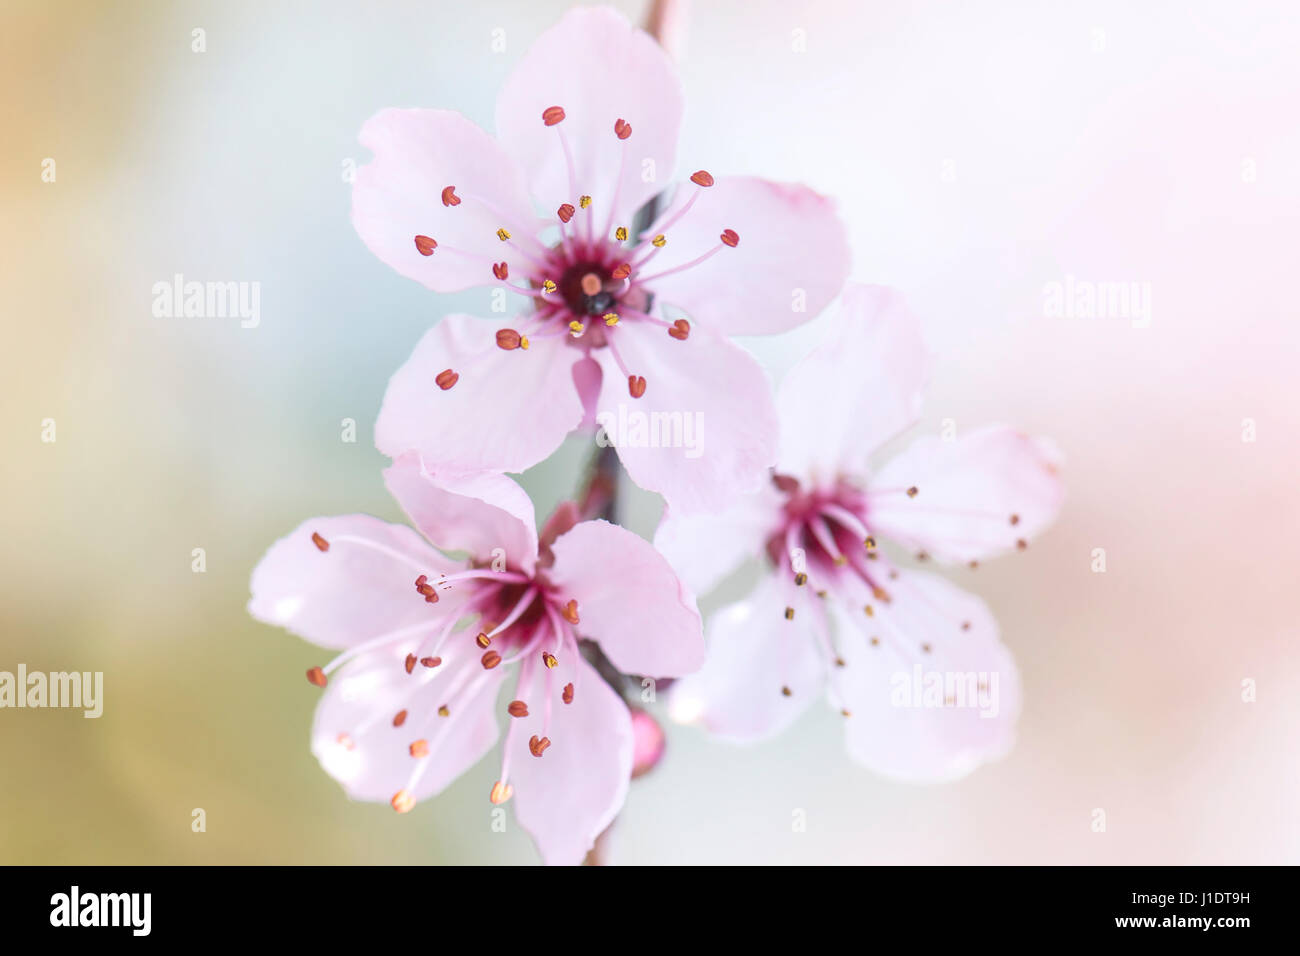 Close-up, High Key Bild der zarte weiche rosa Blüte von Prunus Cerasifera Nigra - Black Cherry Plum Blossom Stockfoto